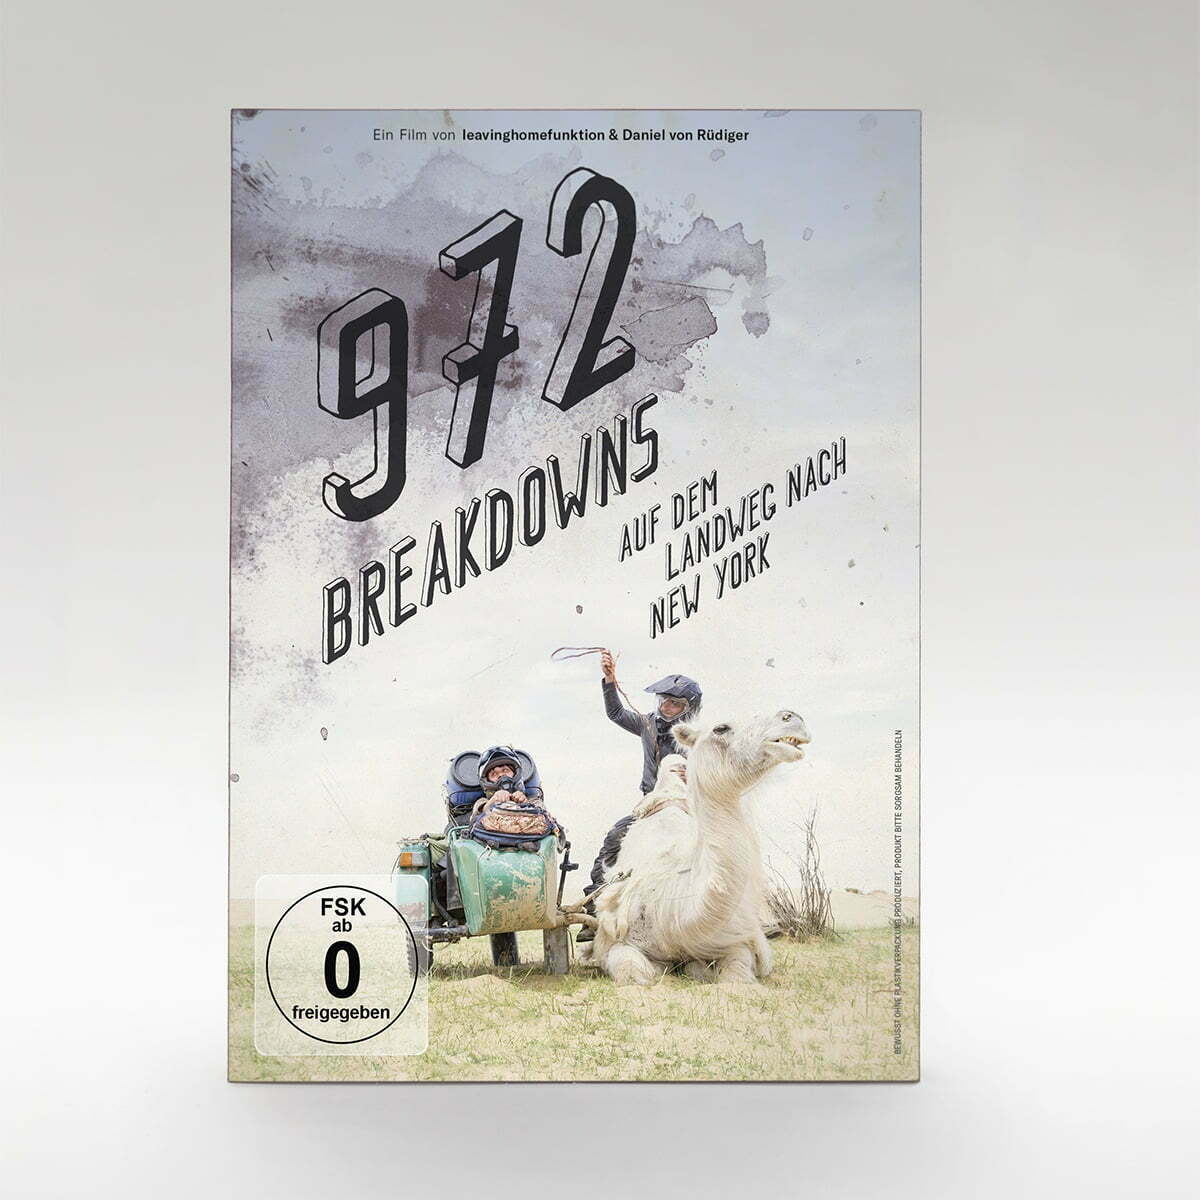 FILM »972 BREAKDOWNS« - 972 Breakdowns